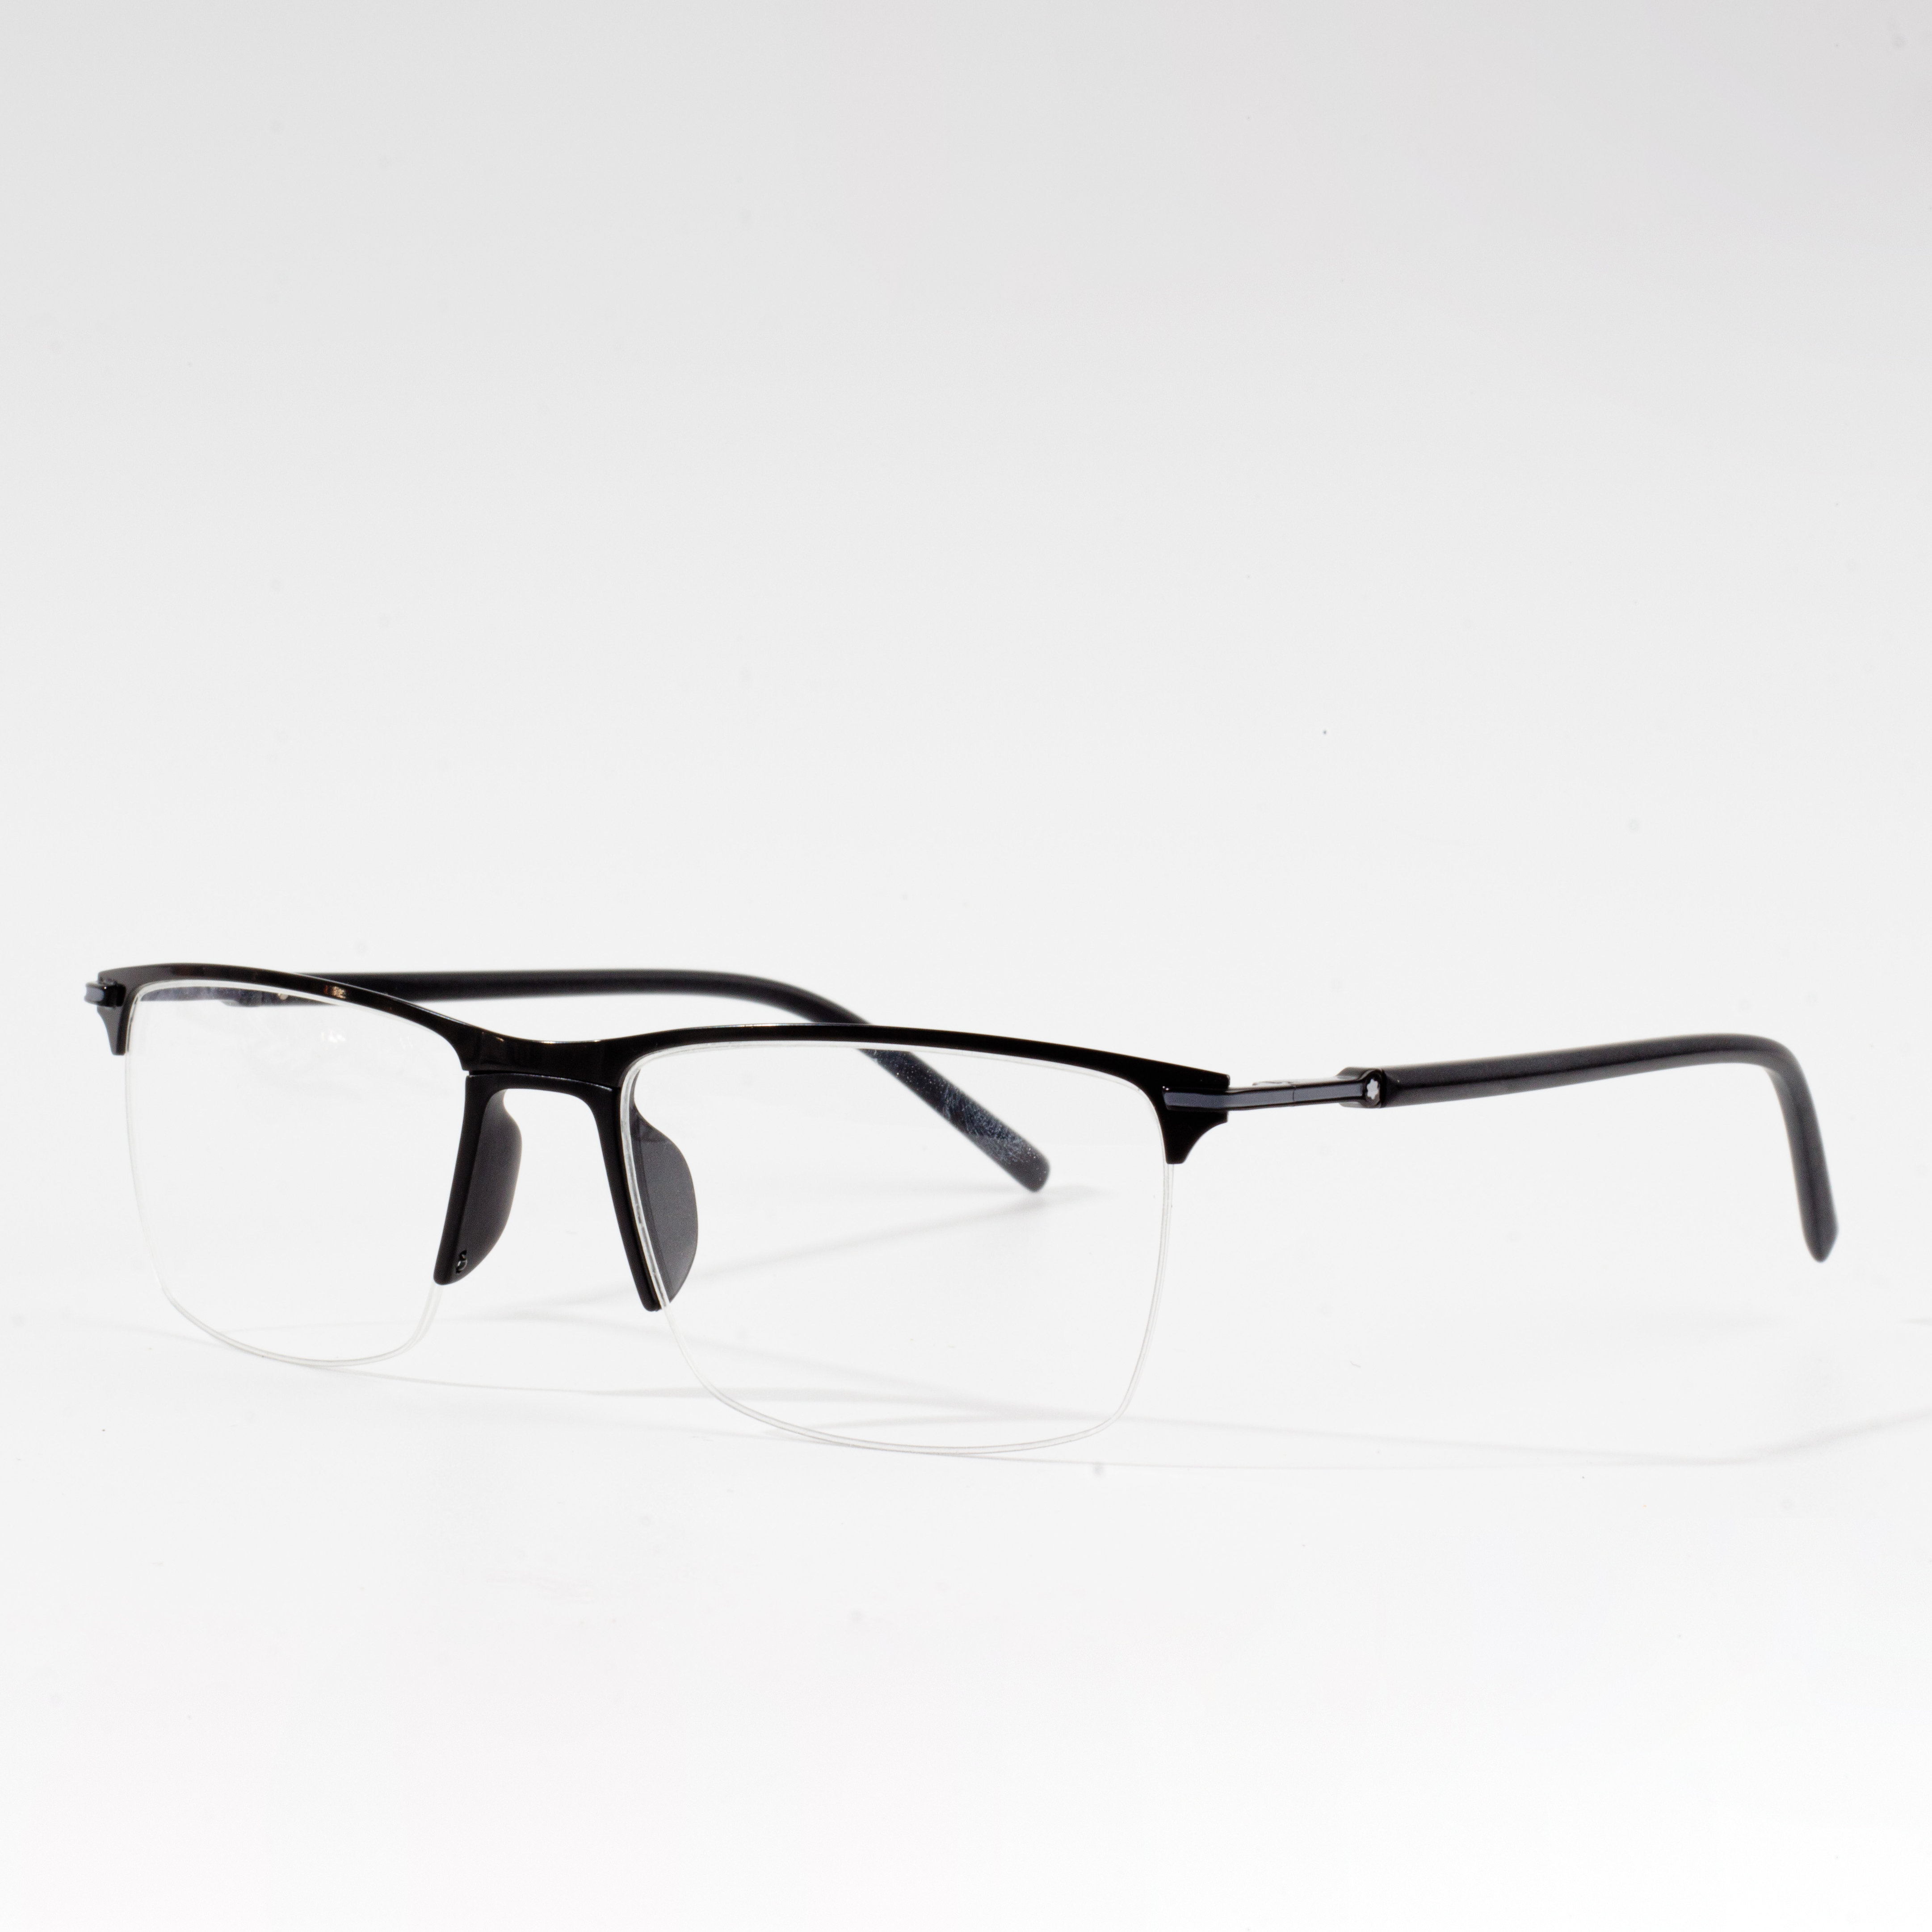 Muntures d'ulleres òptiques per a ulleres